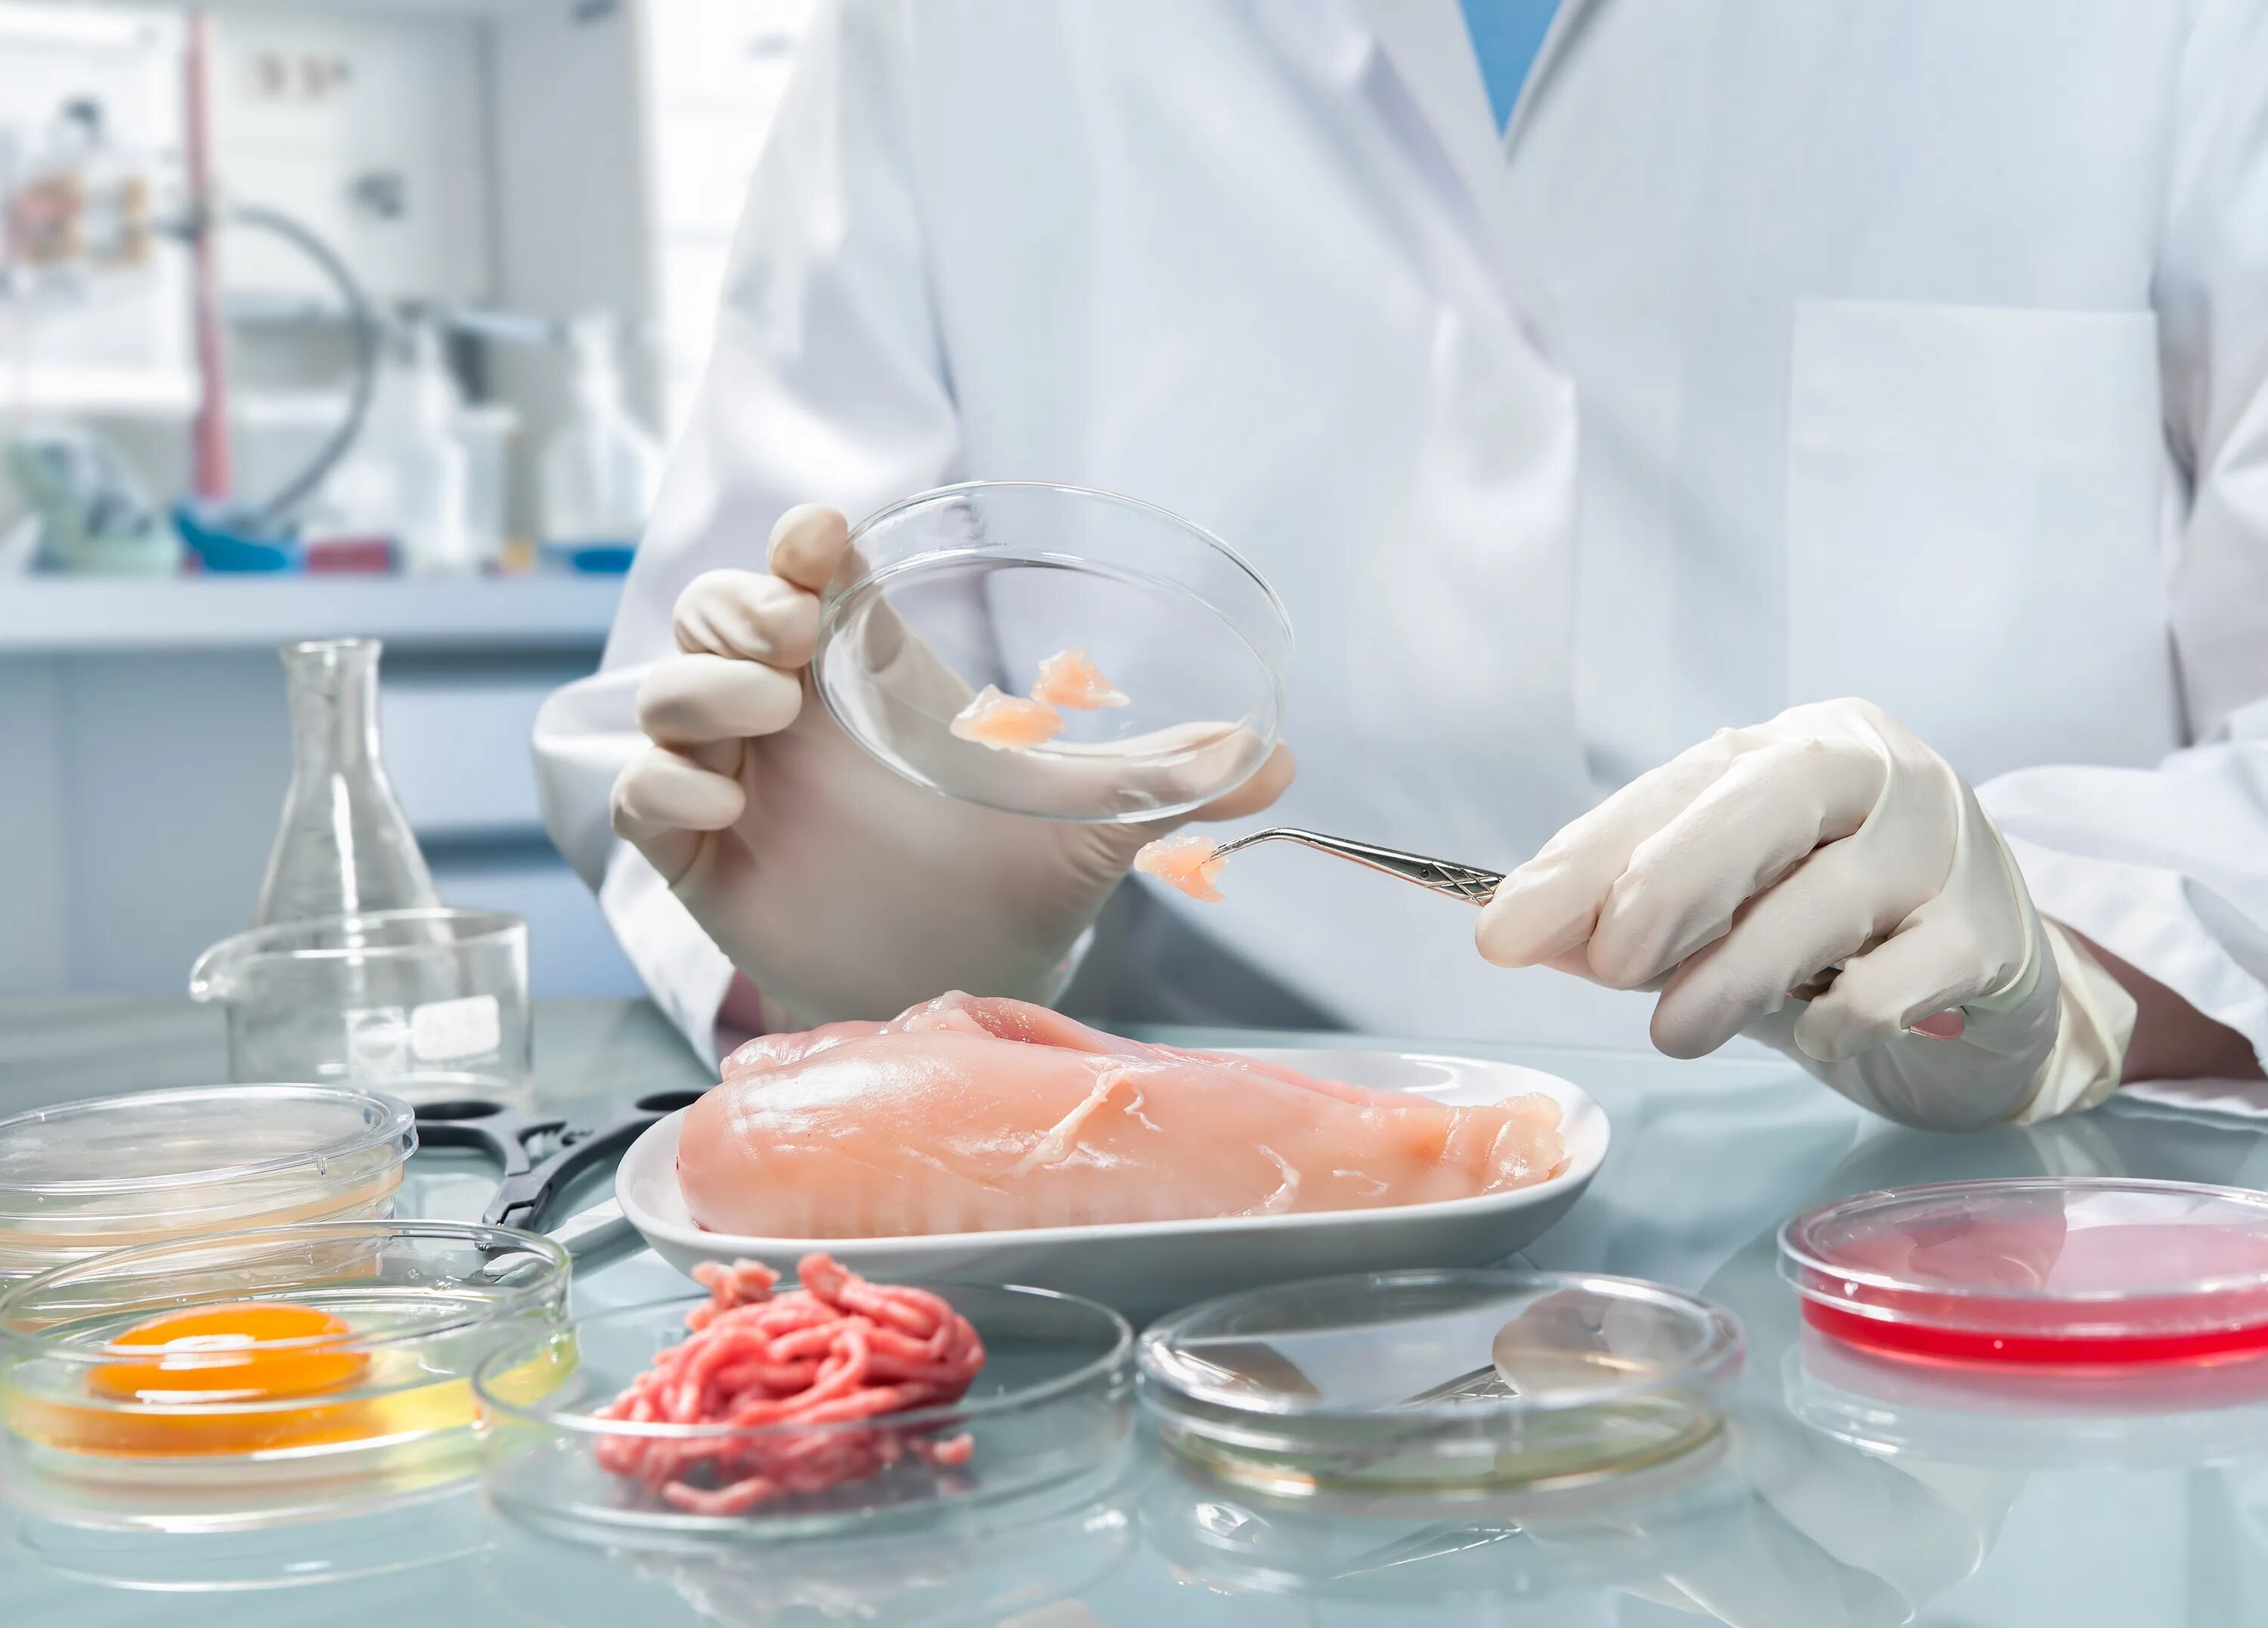 Производство обследования. Санитарная экспертиза пищевых продуктов. Санитарно микробиологическое исследование мяса и мясных продуктов. Пищевая лаборатория. Лаборатория пищевых продуктов.